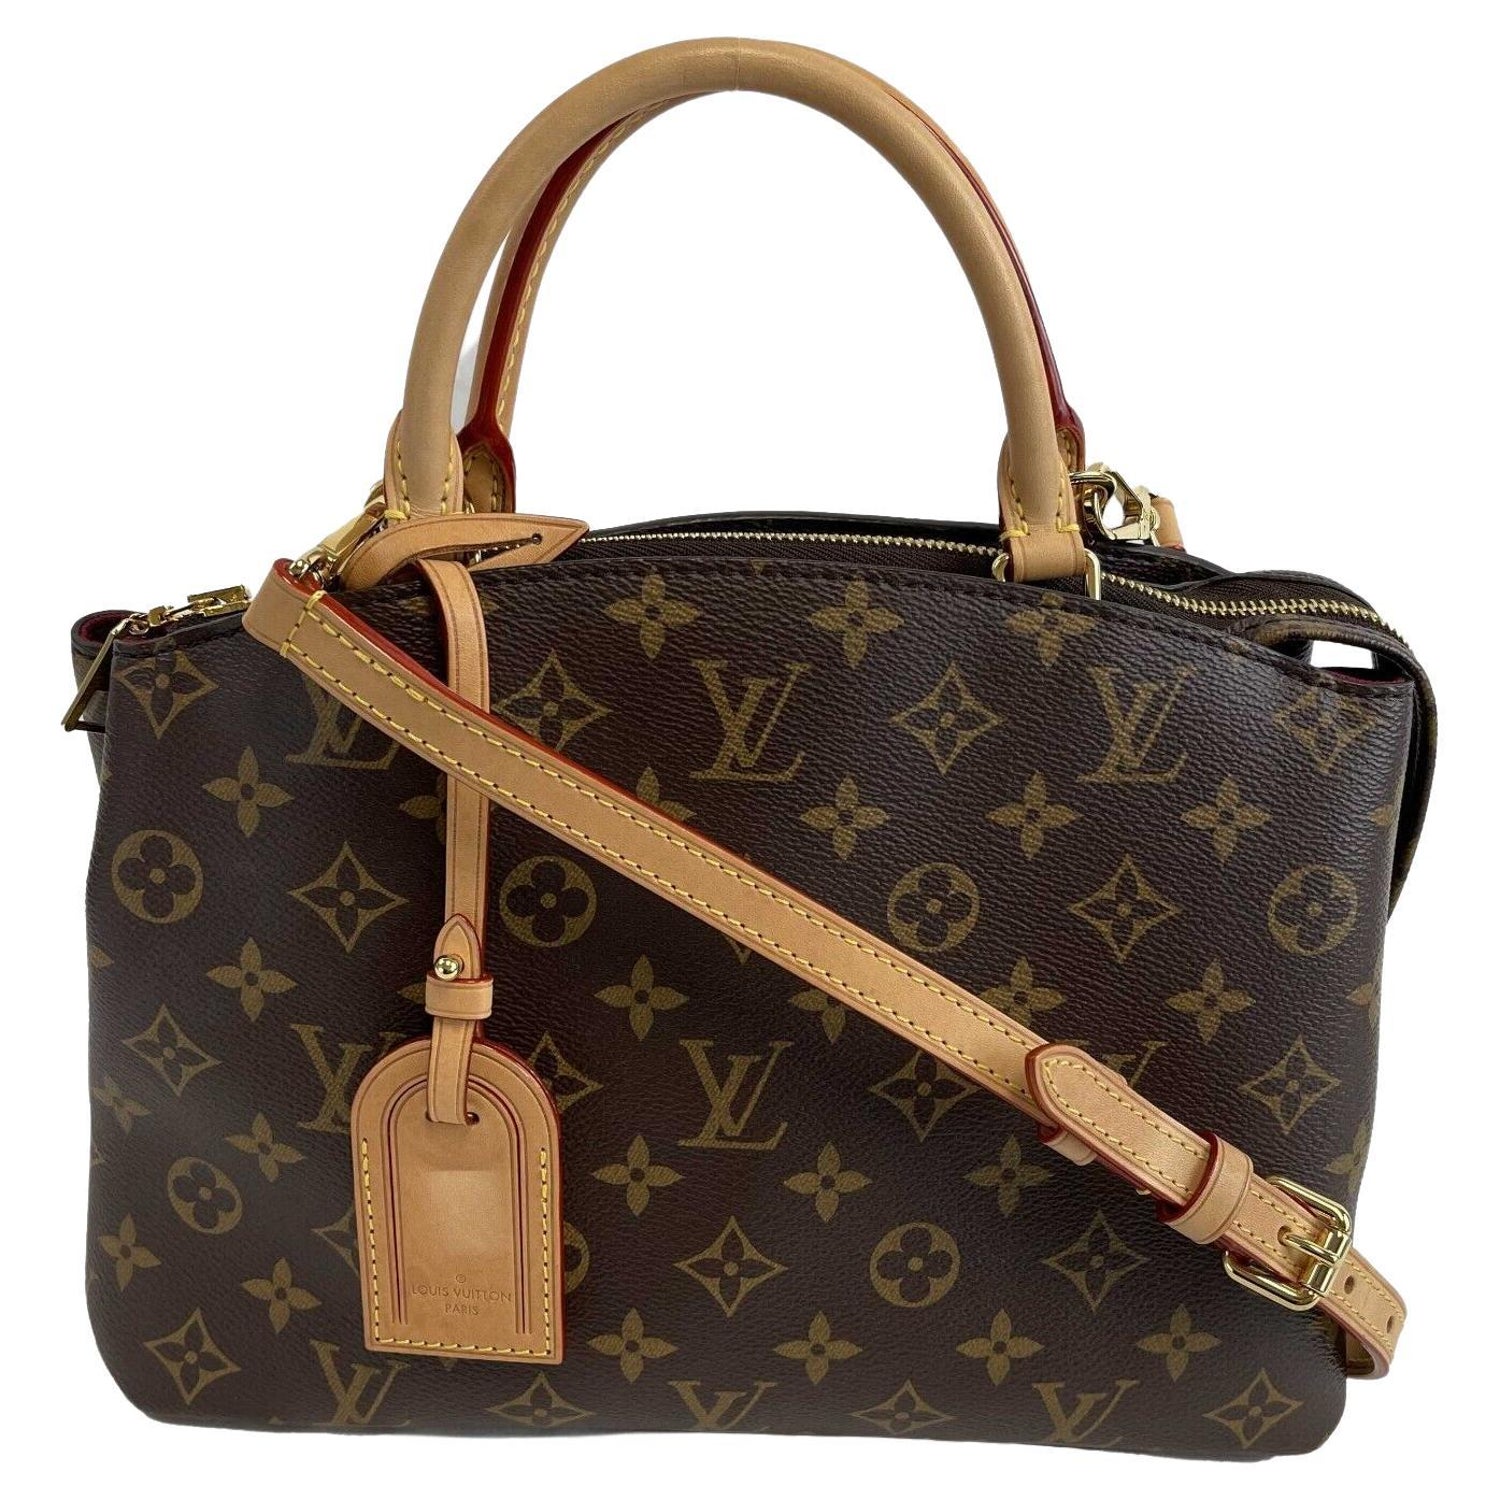 Louis Vuitton Petit Palais Bag - For Sale on 1stDibs